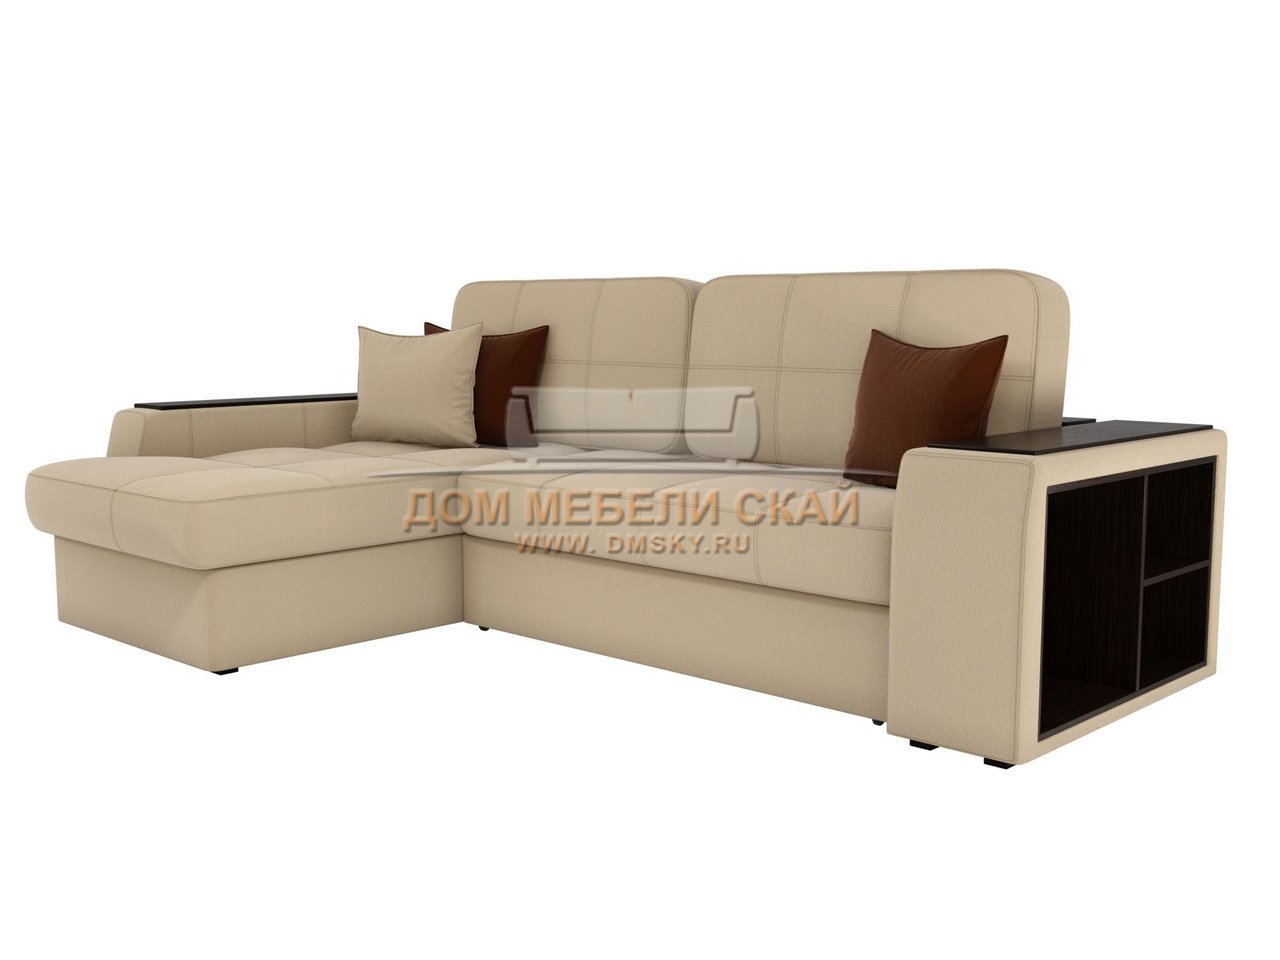 Угловой диван-кровать левый Брюссель, бежевый/рогожка - купить в Москвенедорого по цене 75 990 руб. (арт. B10025956)